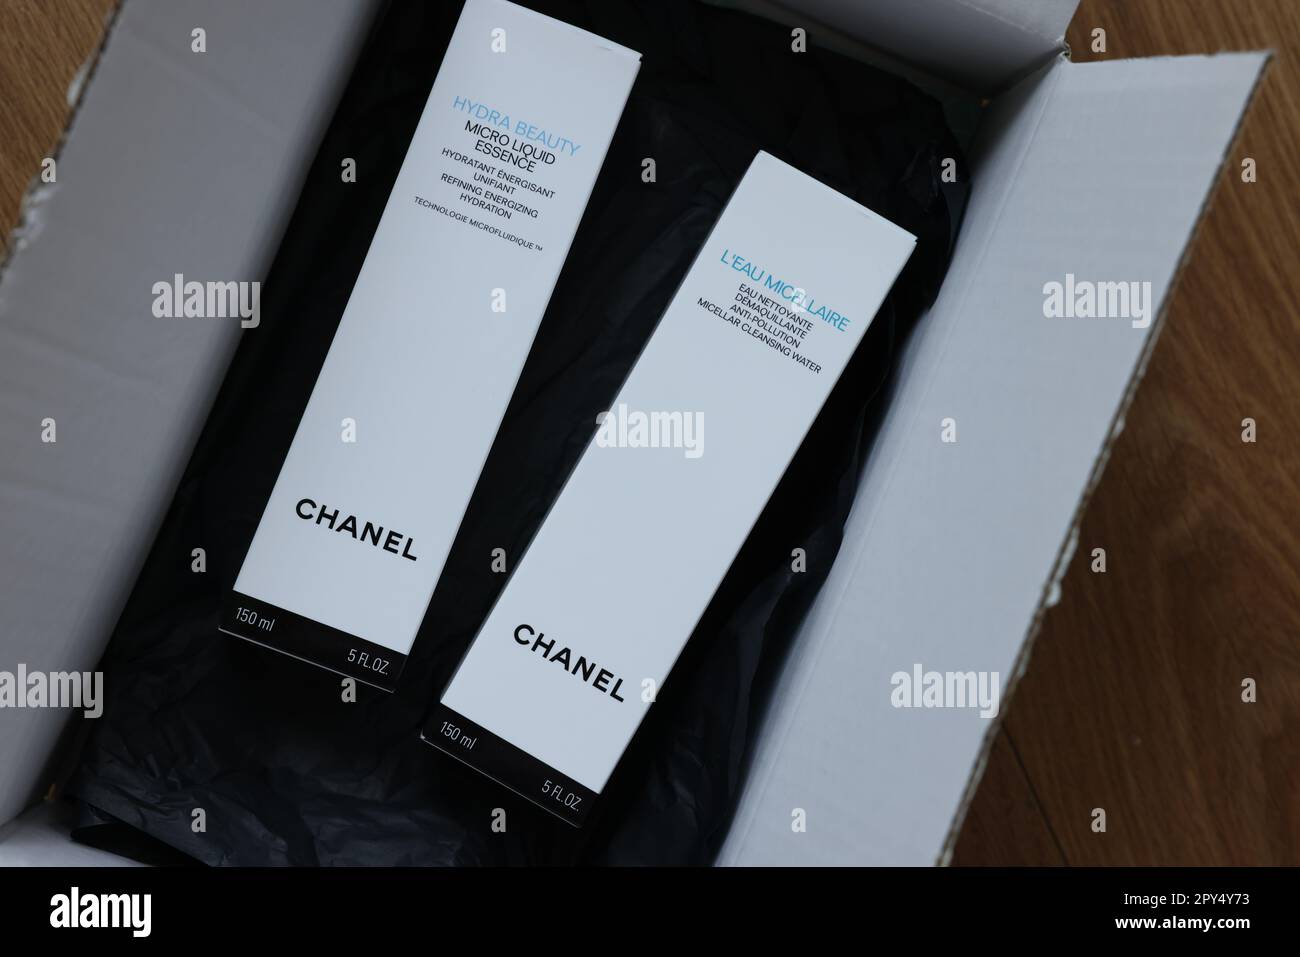 PAYS-BAS, LEIDEN - 12 JUILLET 2022 : eau micellaire Chanel et micro-essence  liquide dans une boîte sur une table en bois, vue du dessus Photo Stock -  Alamy